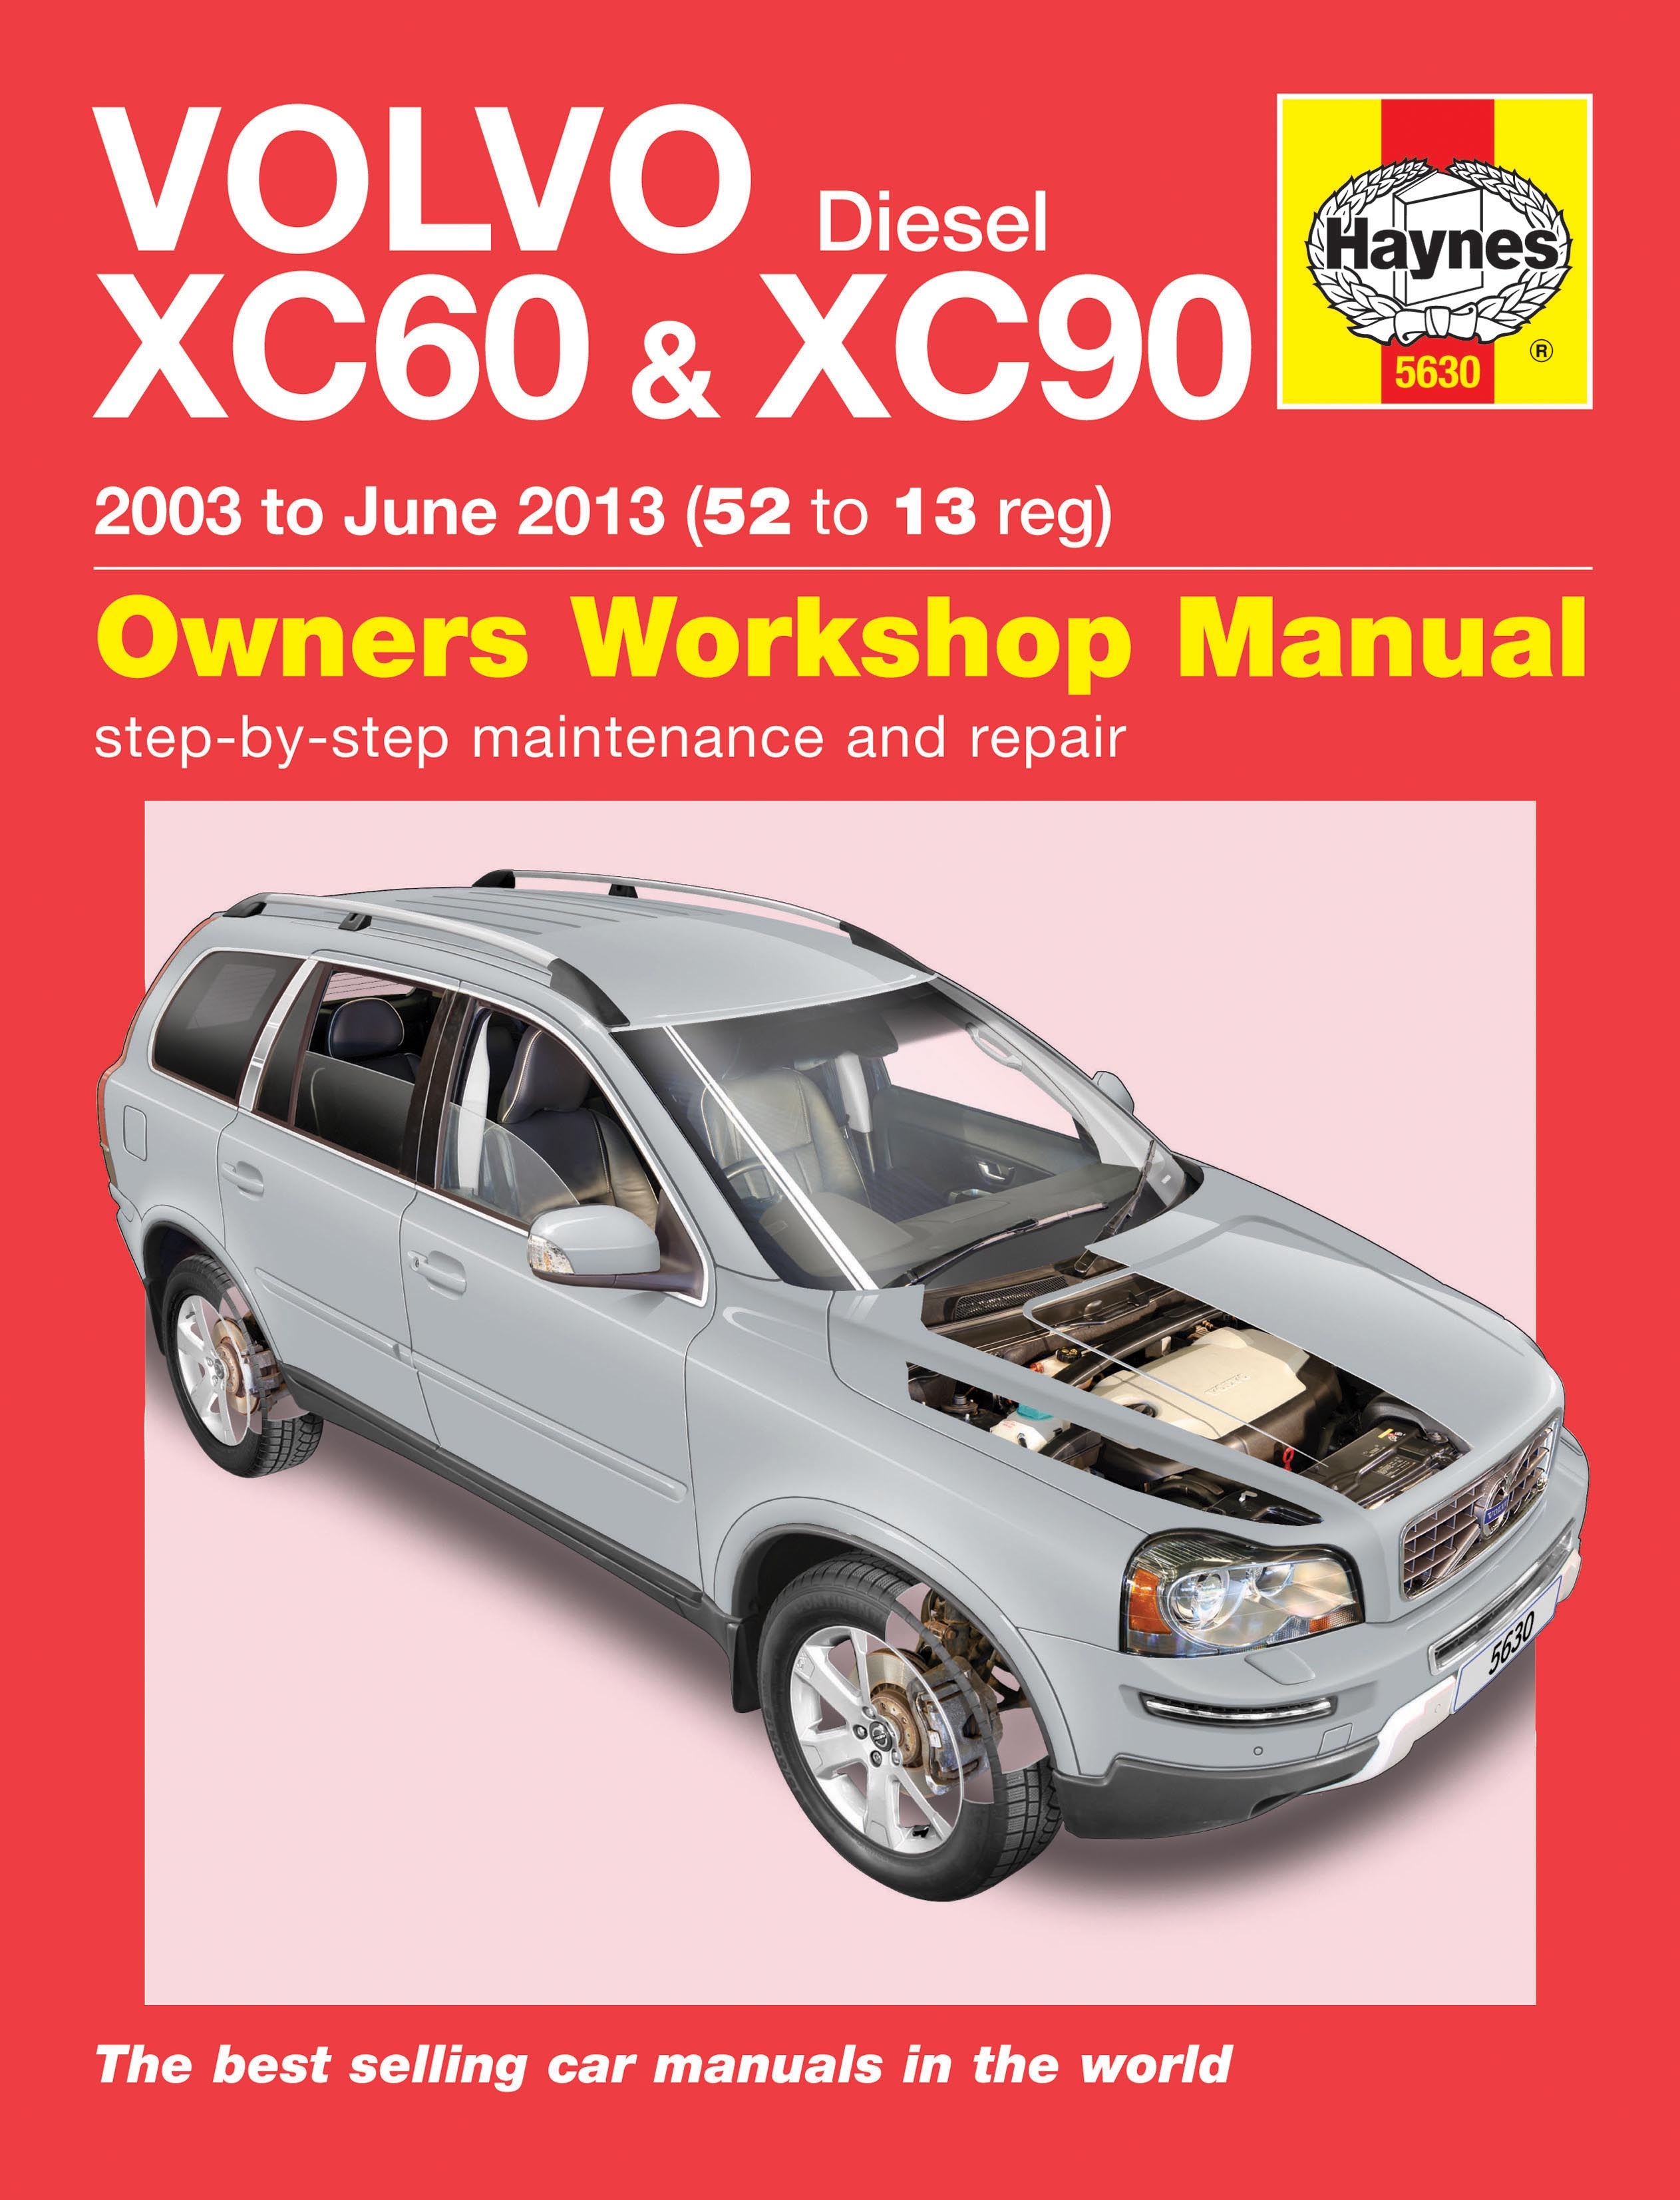 VOLVO XC60 XC90 (20032013) instrukcja napraw Haynes